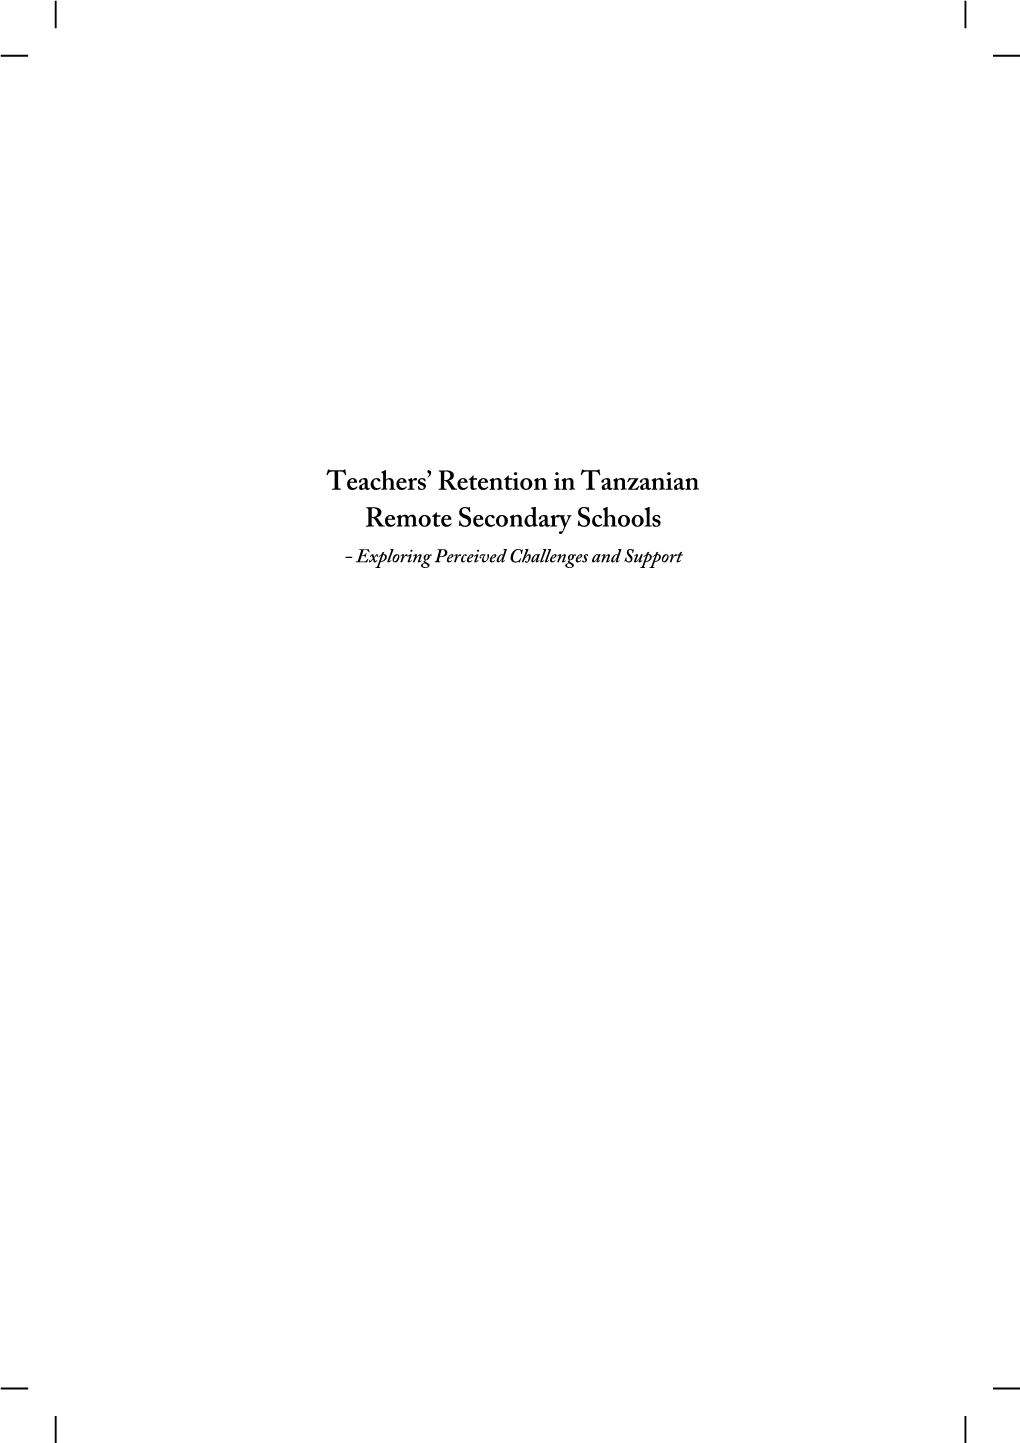 Teachers' Retention in Tanzanian Remote Secondary Schools